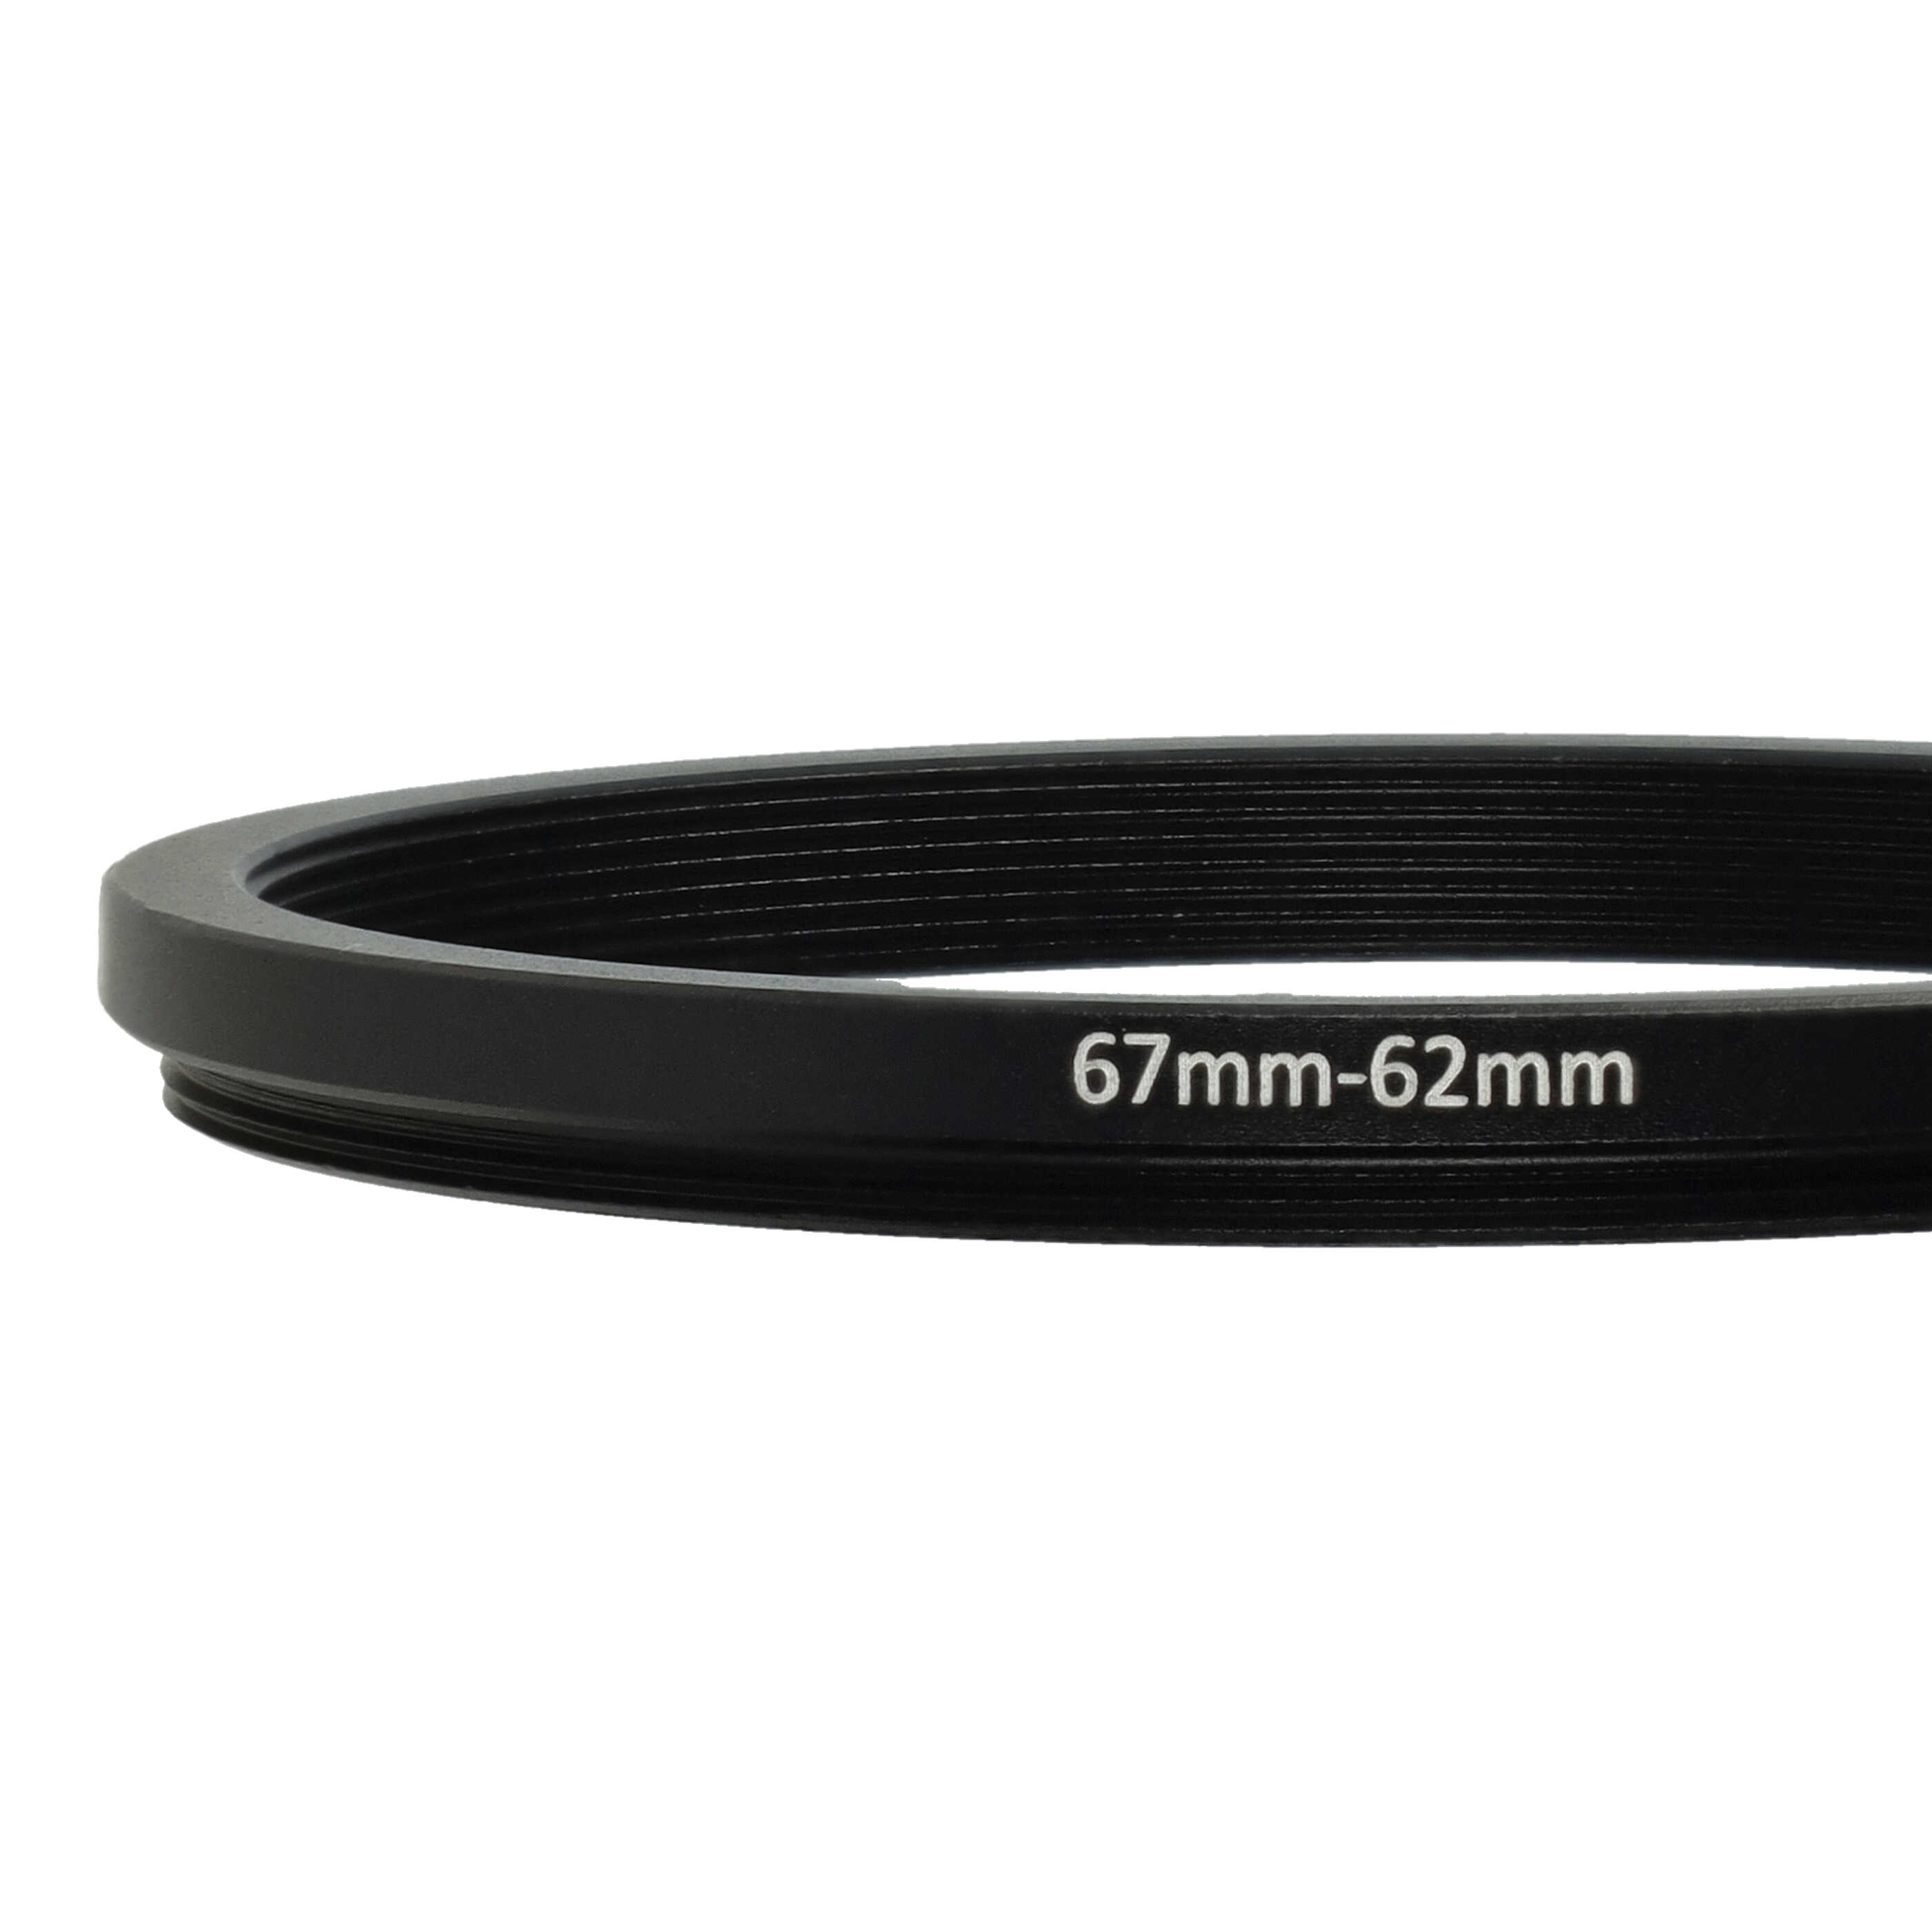 Redukcja filtrowa adapter Step-Down 67 mm - 62 mm pasująca do obiektywu - metal, czarny